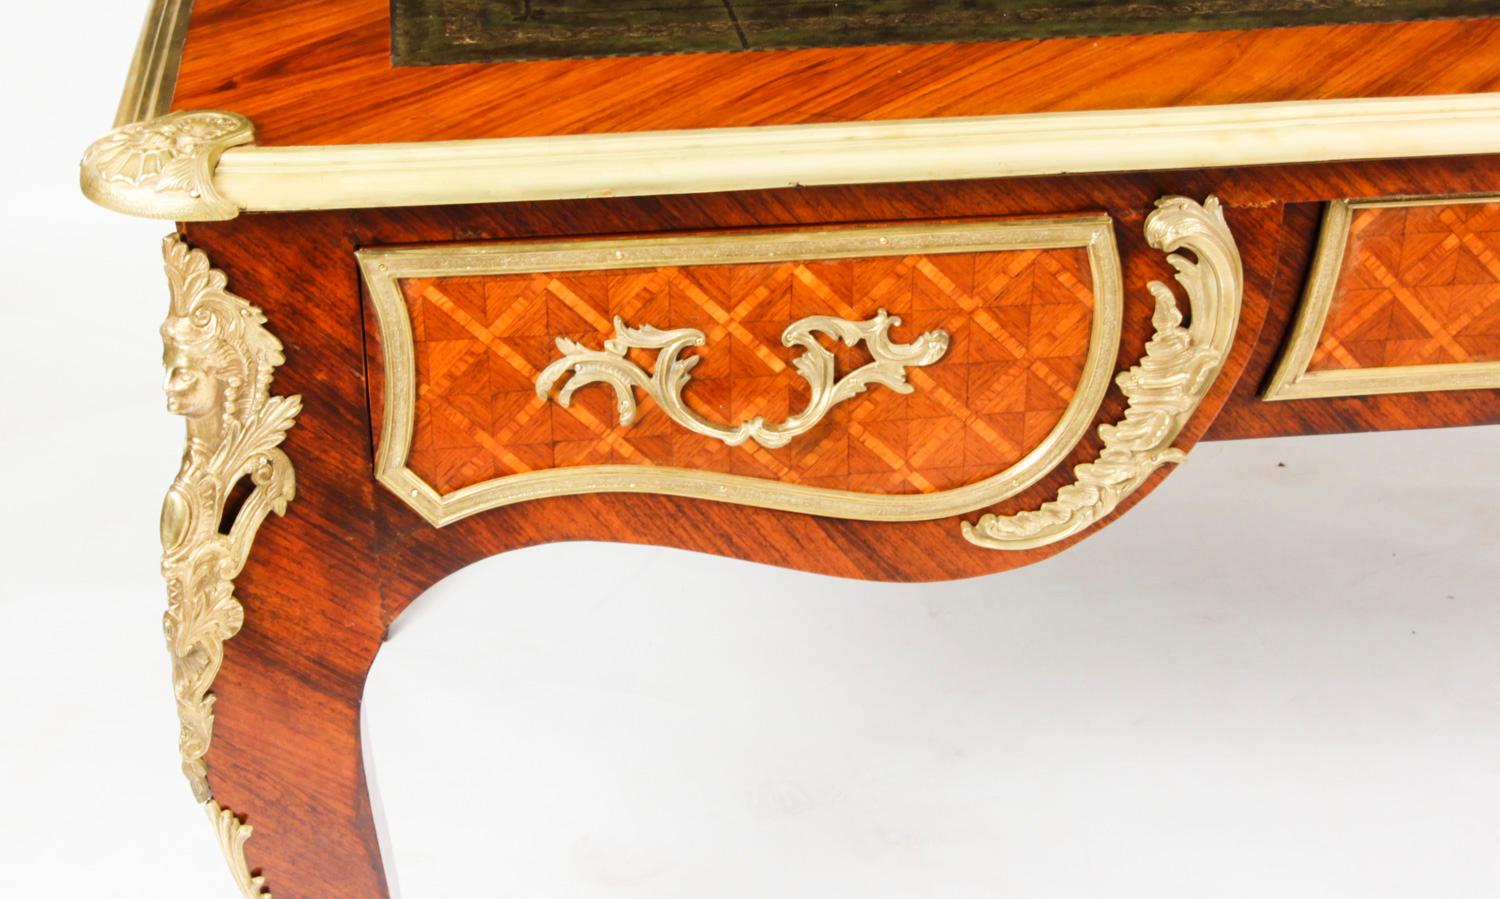 Antique Louis Revival Ormolu Mounted Bureau Plat Desk 19th C For Sale 2